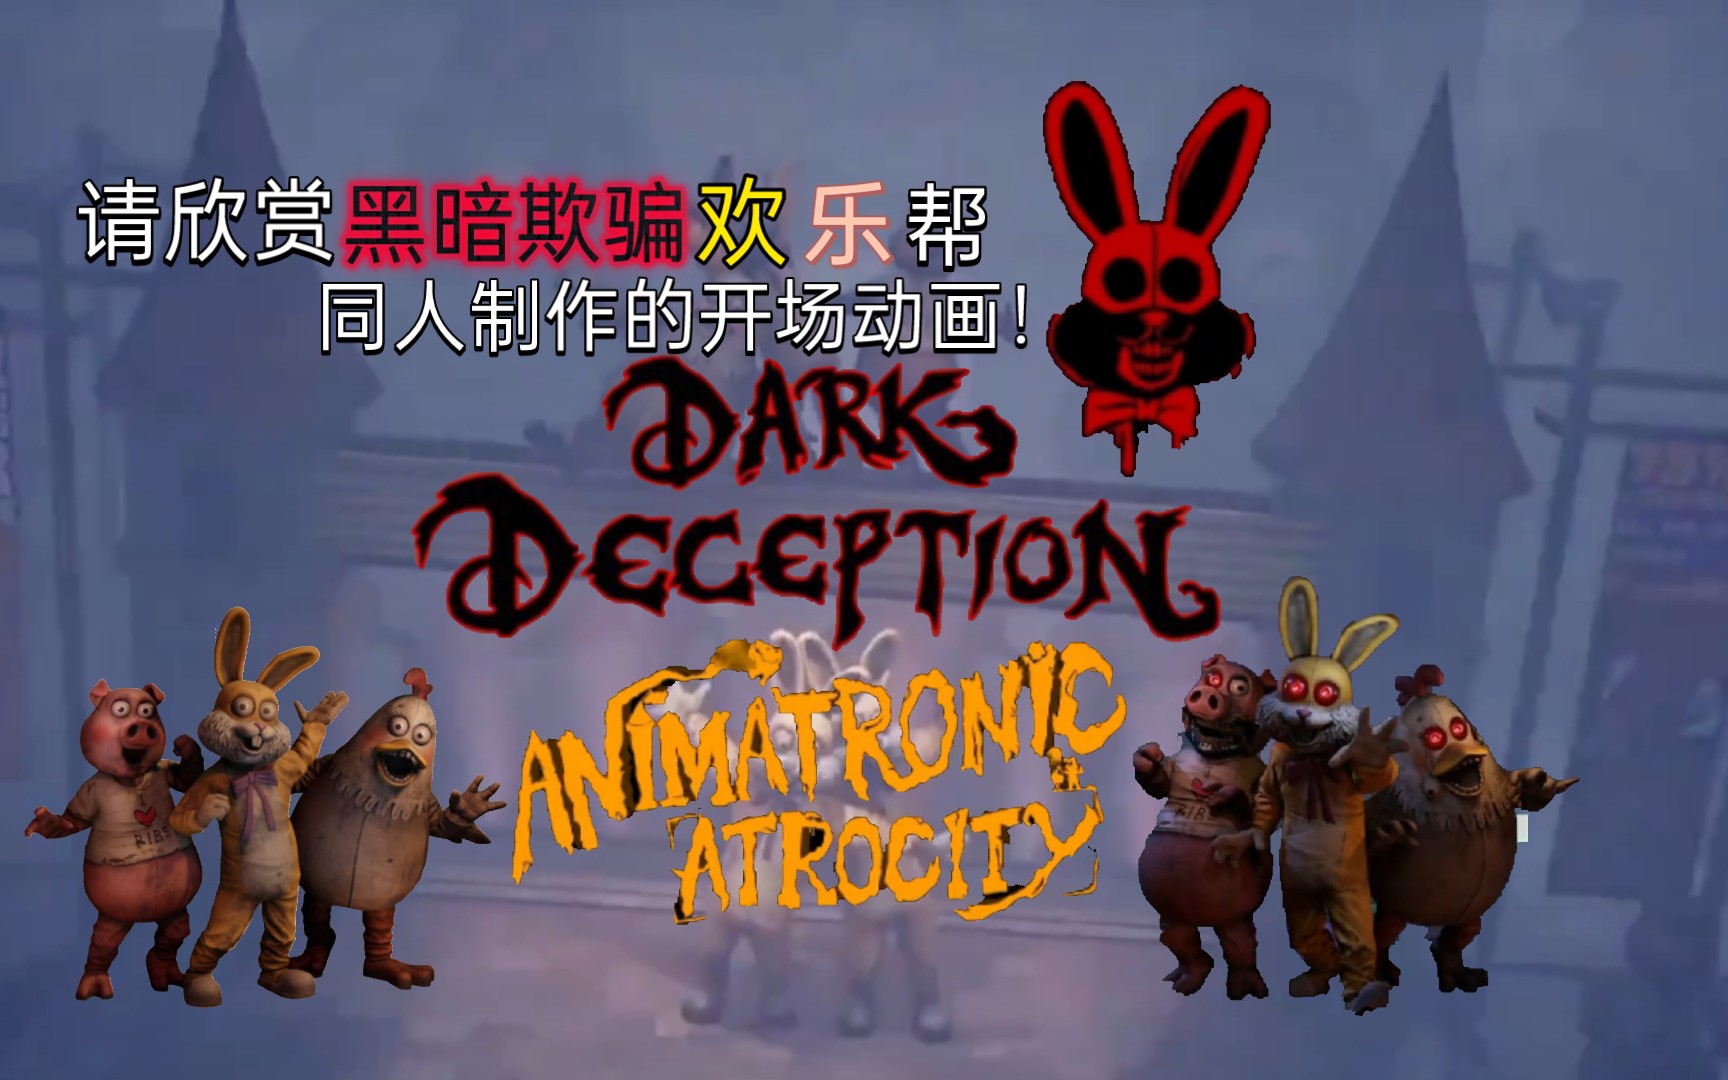 用变声器打开【黑暗欺骗Dark deception】欢乐帮同人制作的开场动画！请欣赏！